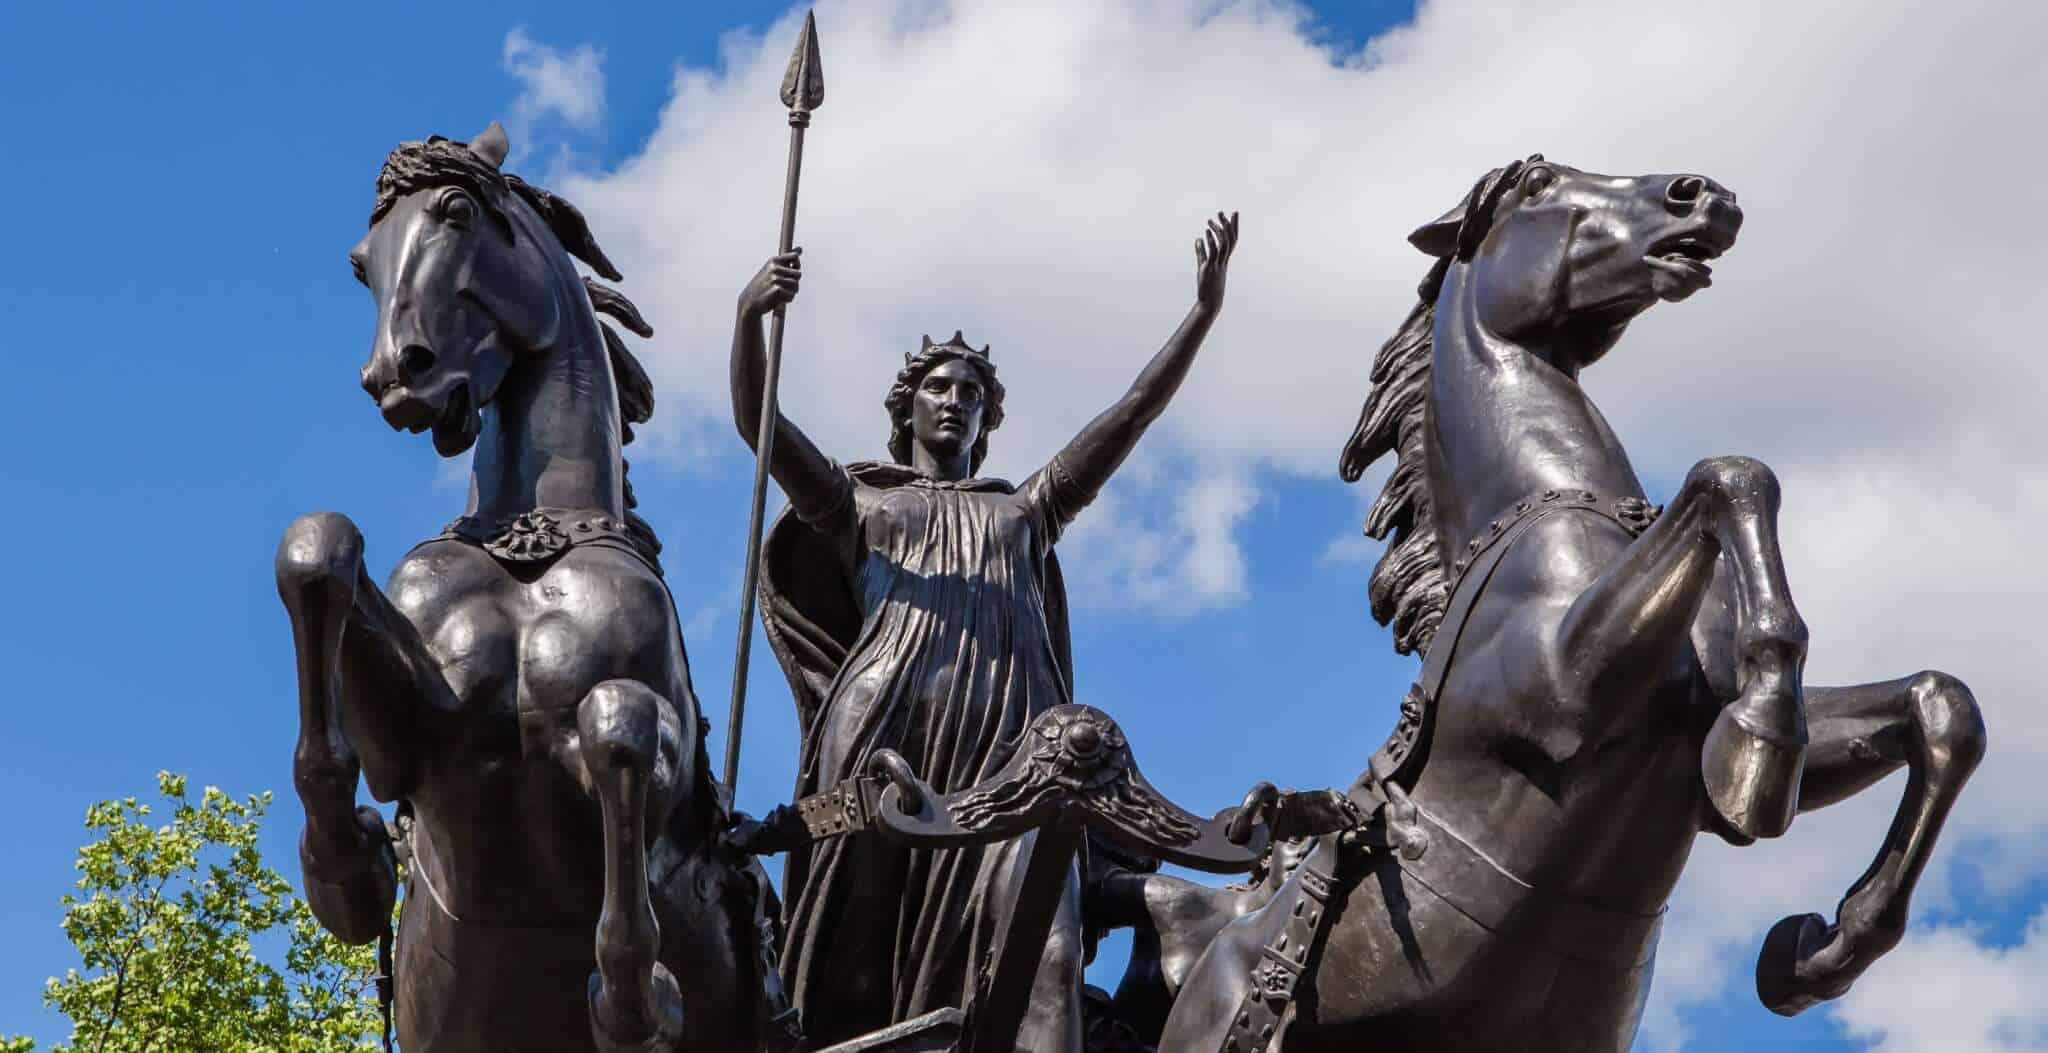 Queen Boudica (Boadicea) of the Iceni